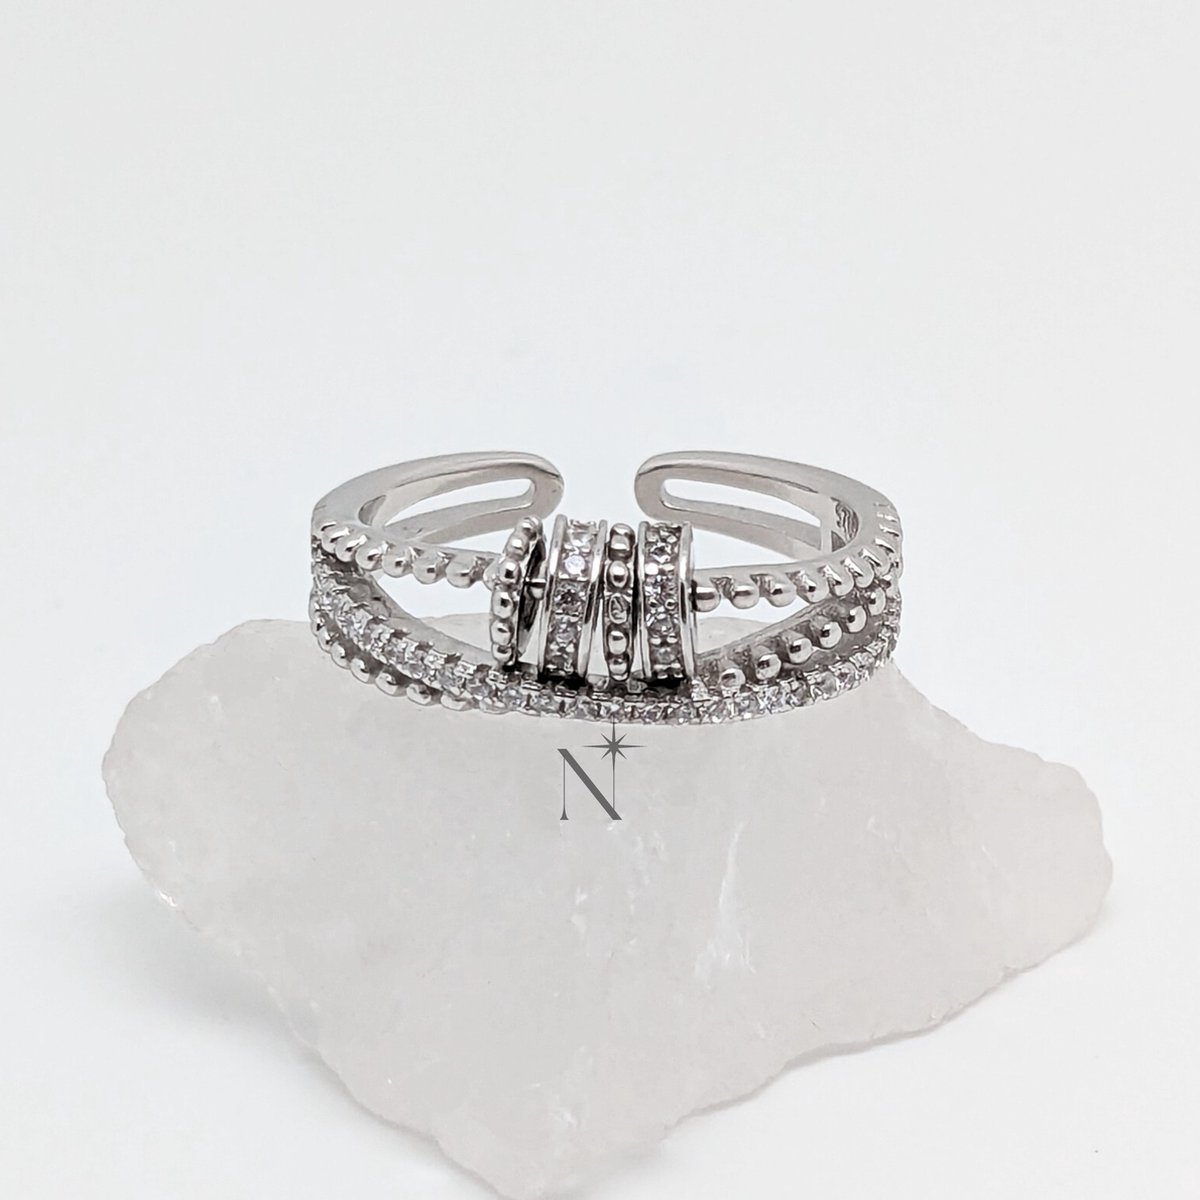 Luminora S925 Serenity Ring - Fidget Ring Zilver 925 - Anxiety Ring - Stress Ring - Anti Stress Ring - Spinner Ring - Spinning Ring - Draai Ring - Ring Zilver Dames - Zilveren Ring - Wellness Sieraden